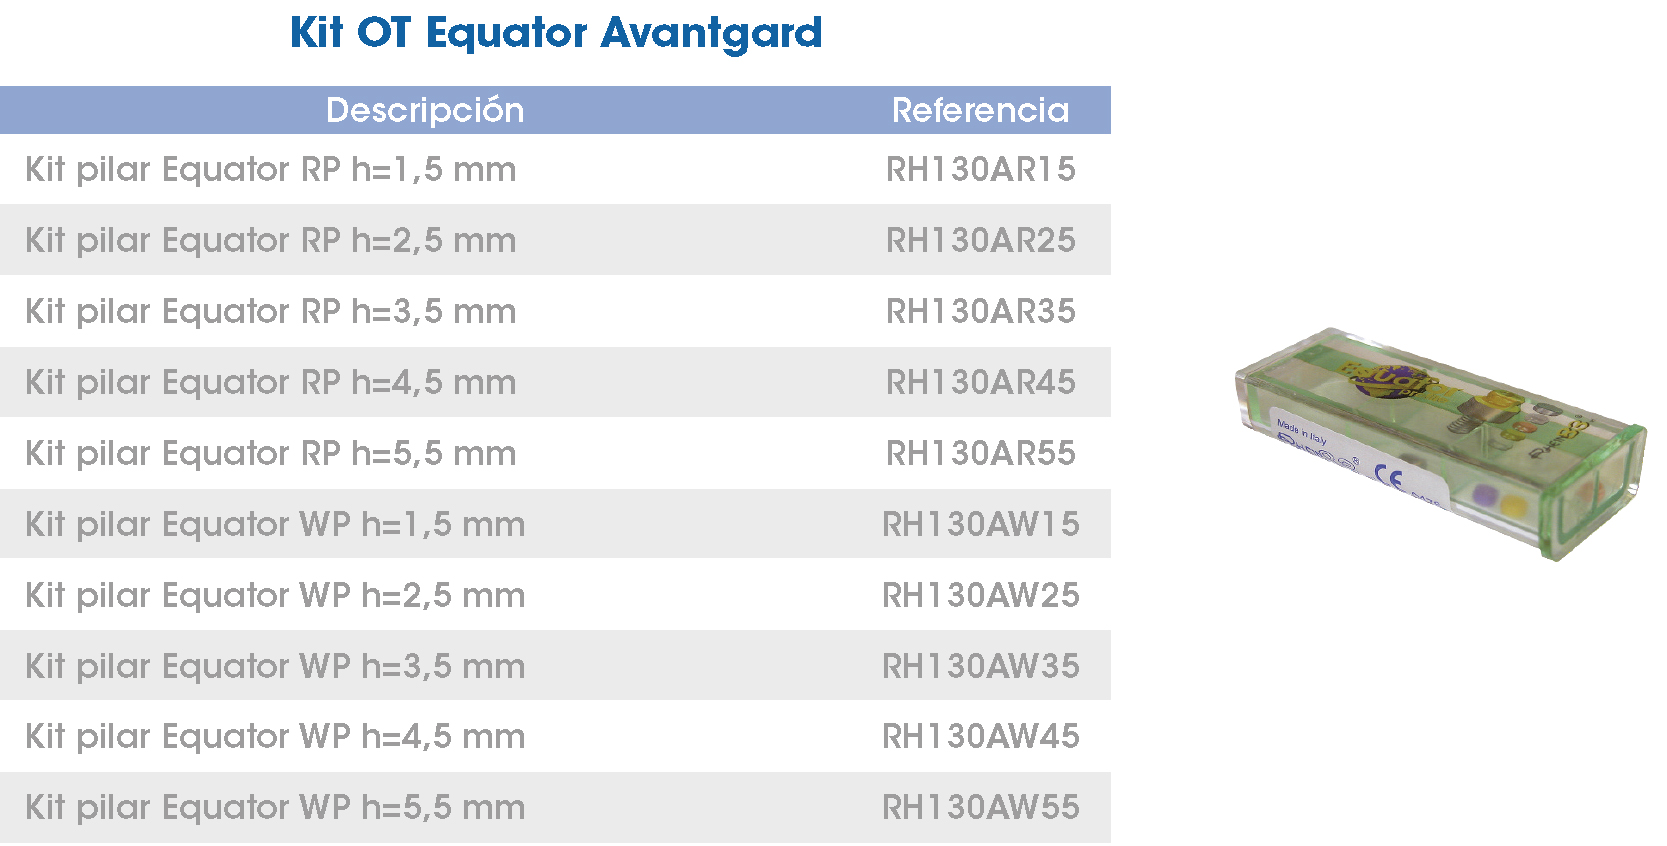 Kit OT Equator Avantgard